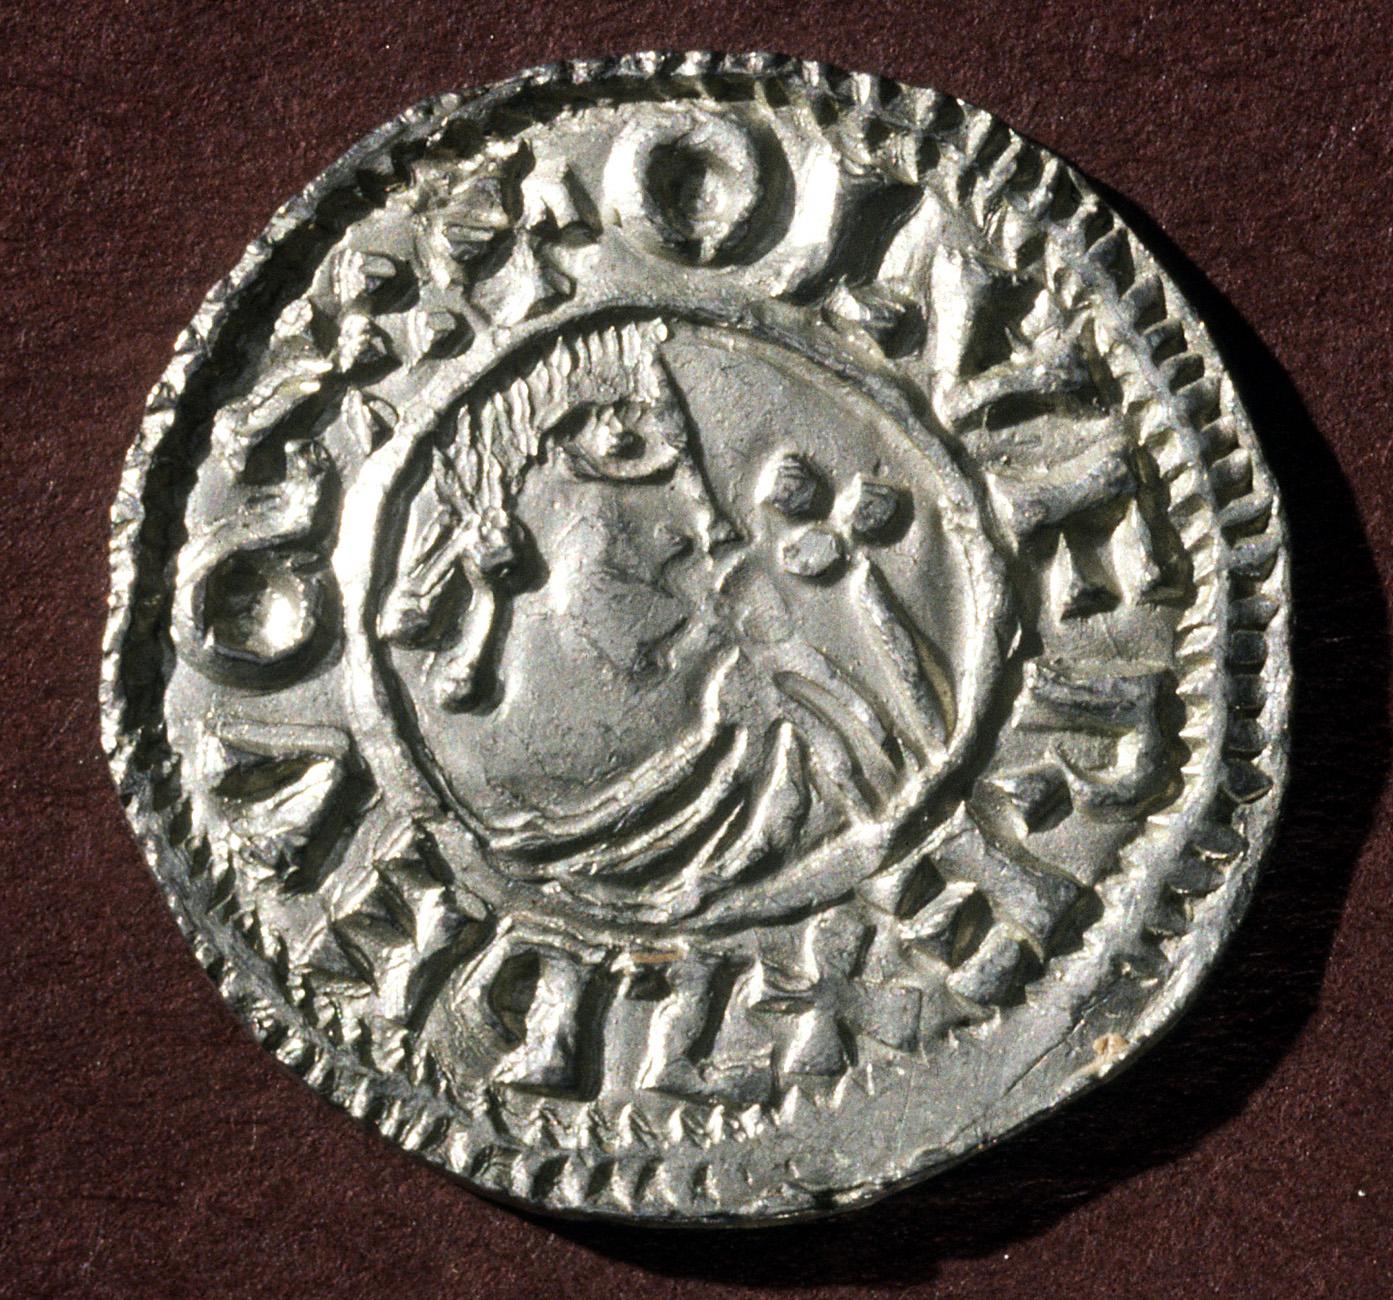 Sveriges första mynt. Präglat under Olof Skötkonungs styre runt 995.